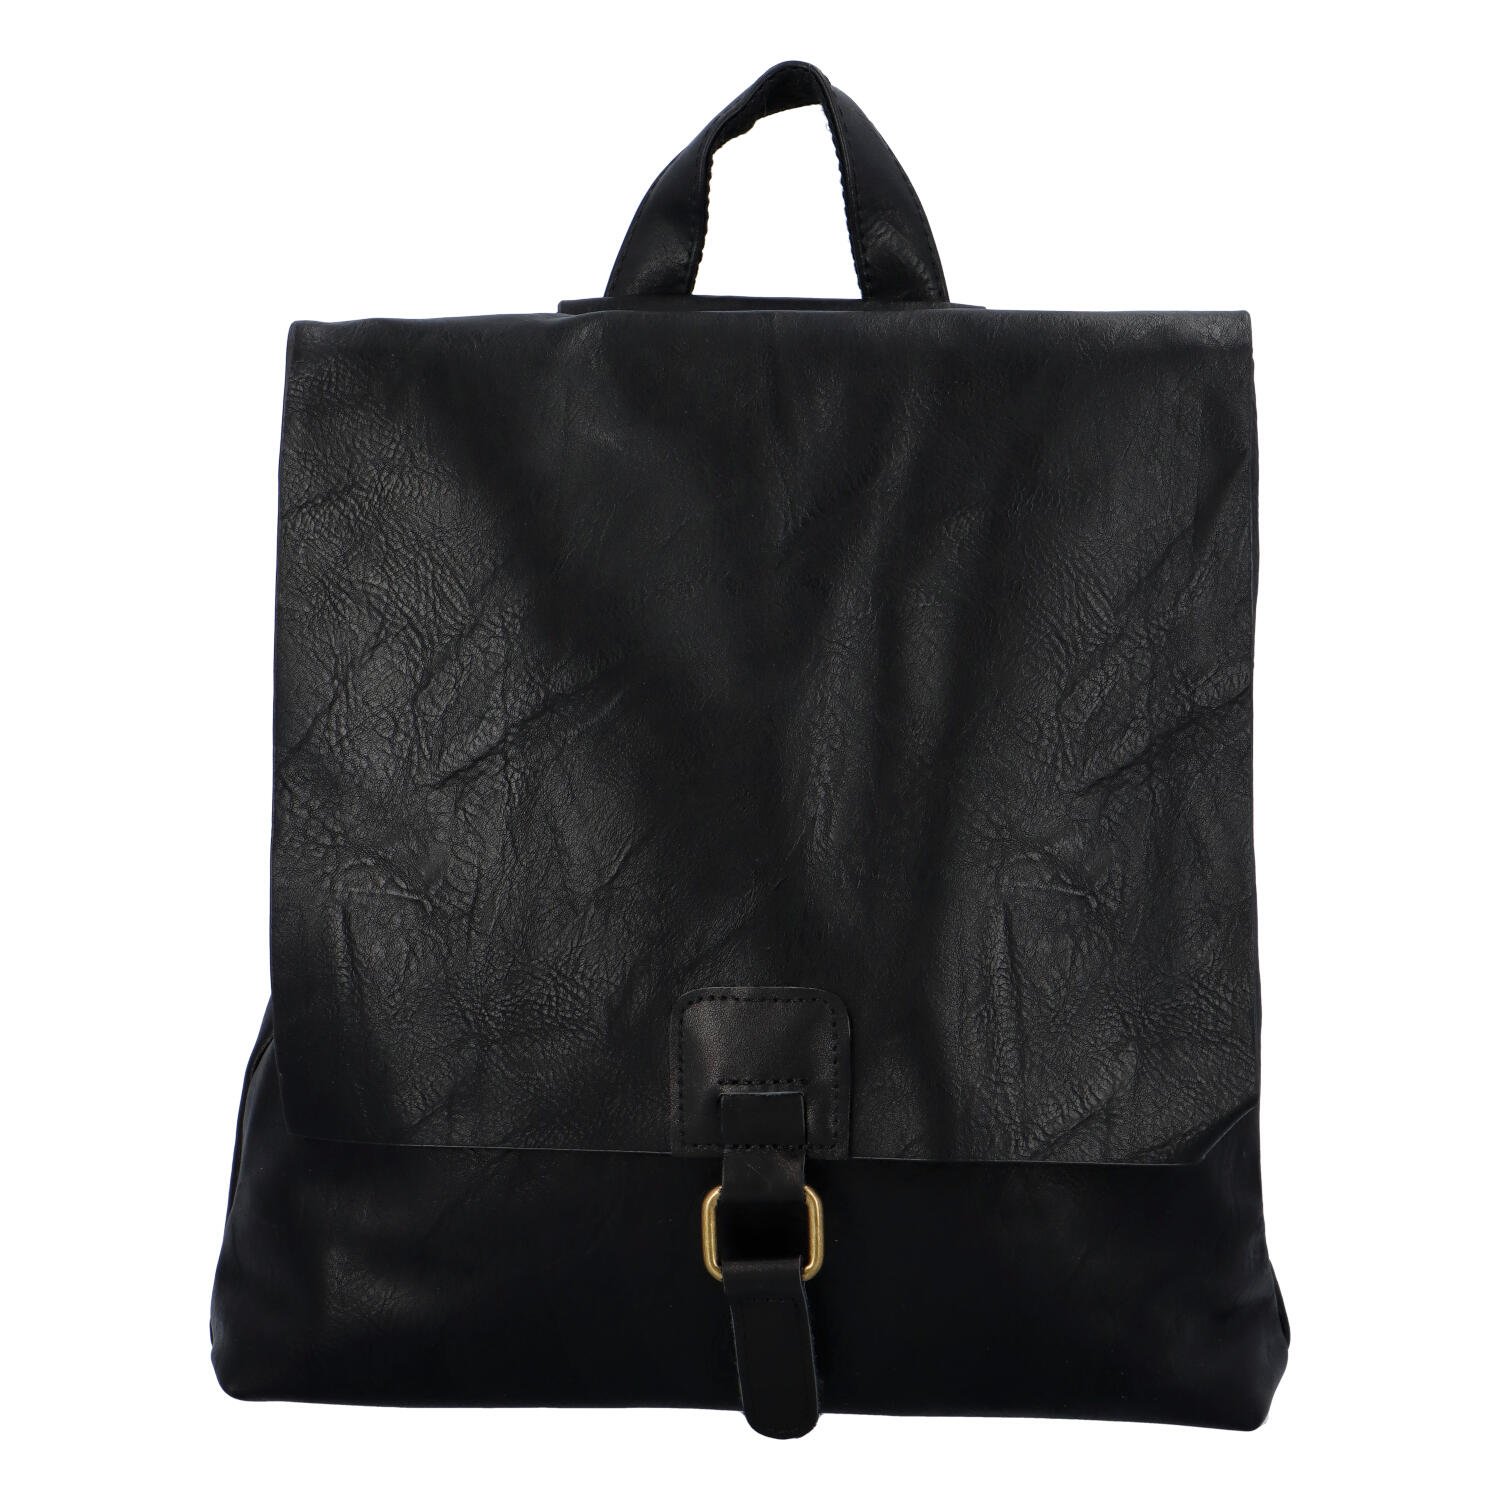 Dámský městský batoh černý - Paolo Bags Vivet